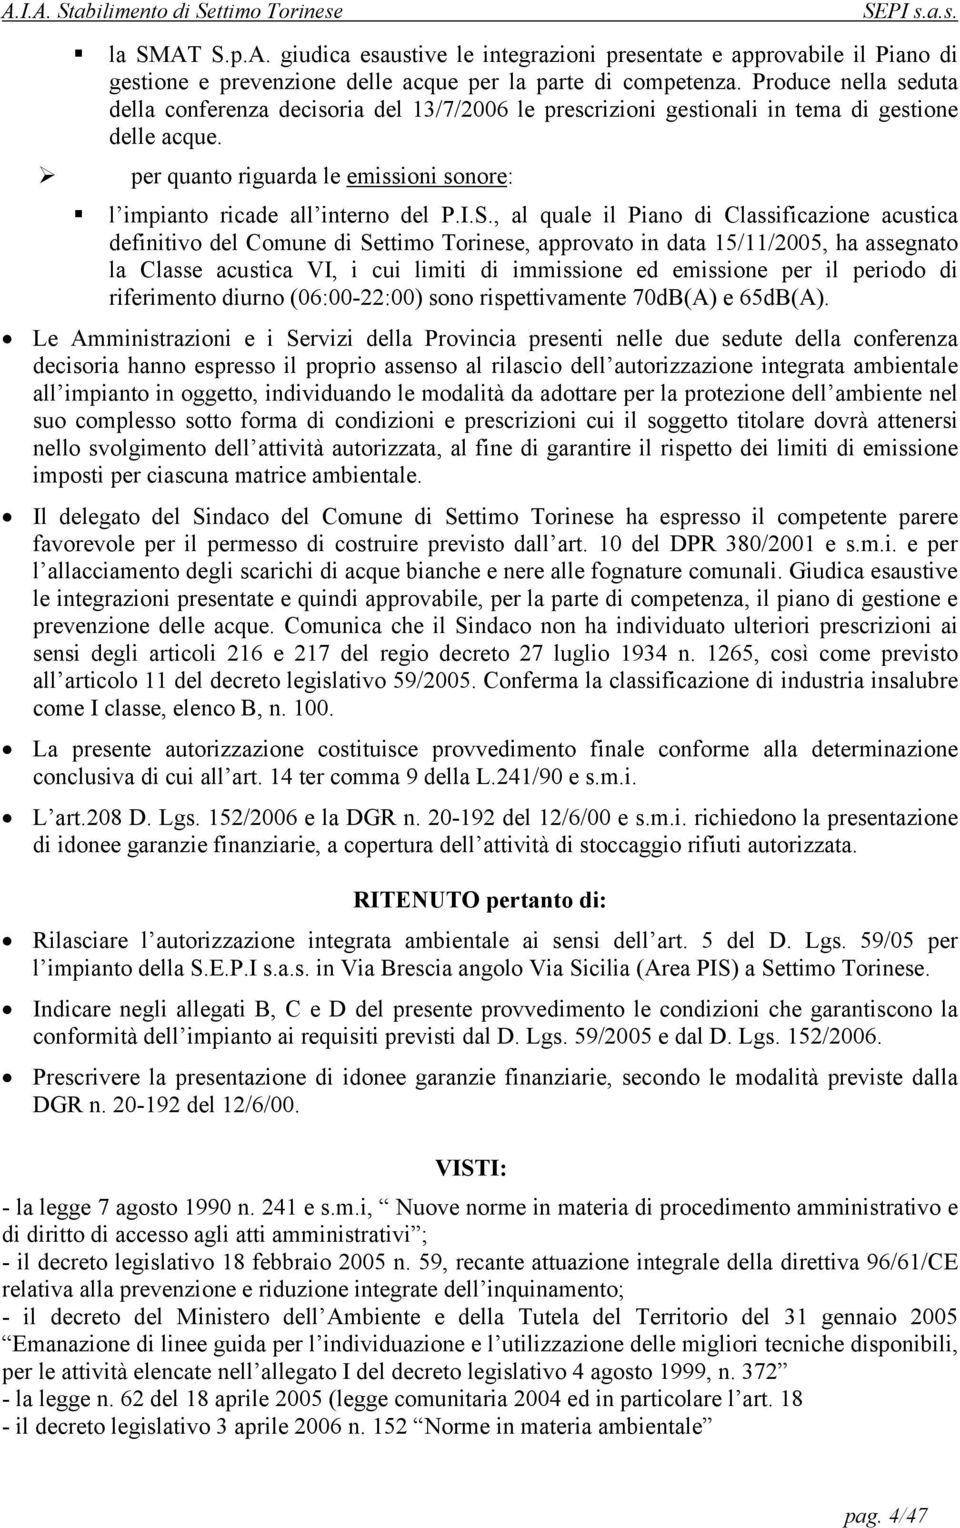 I.S., al quale il Piano di Classificazione acustica definitivo del Comune di Settimo Torinese, approvato in data 15/11/2005, ha assegnato la Classe acustica VI, i cui limiti di immissione ed